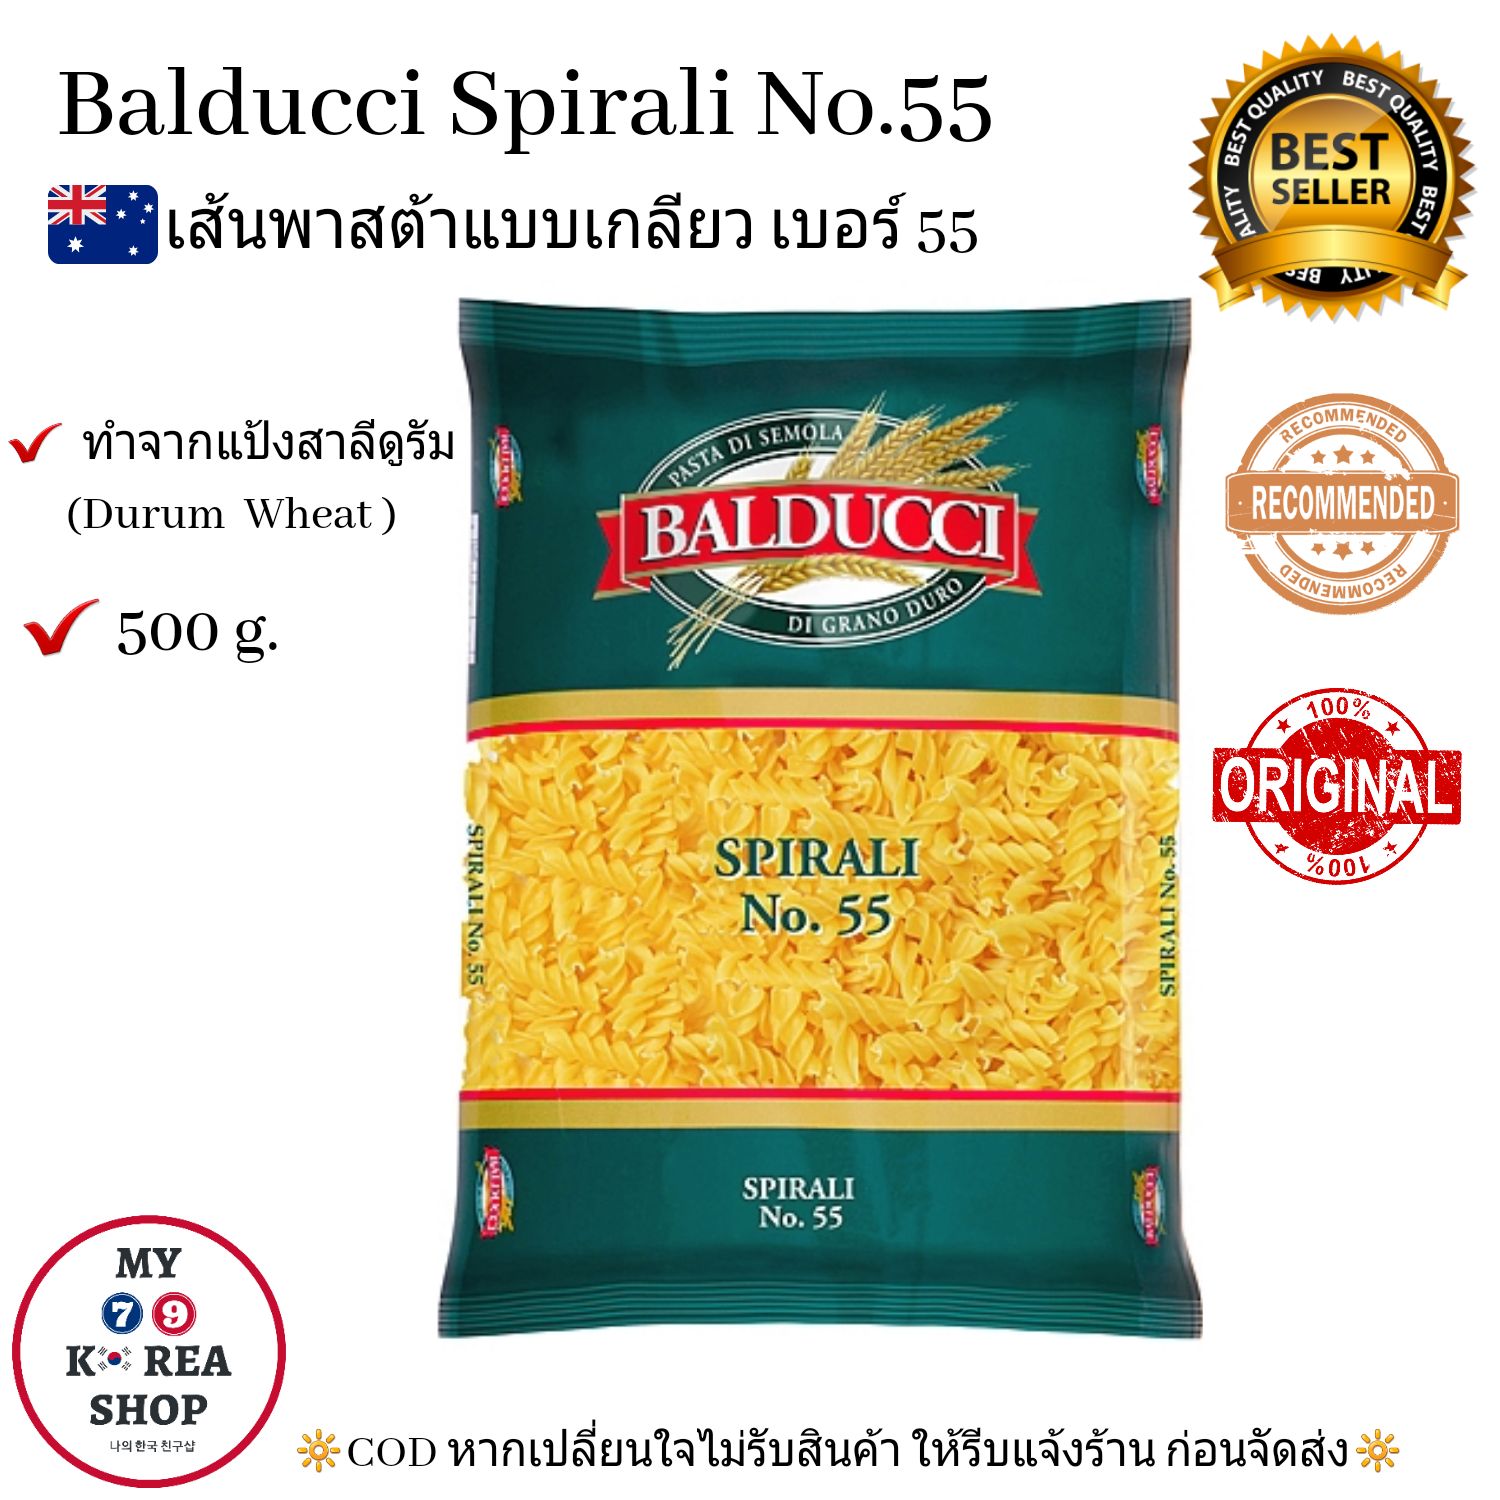 Balducci Spirali No.55 (500g.) เส้นพาสต้าแบบเกลียว เบอร์ 55